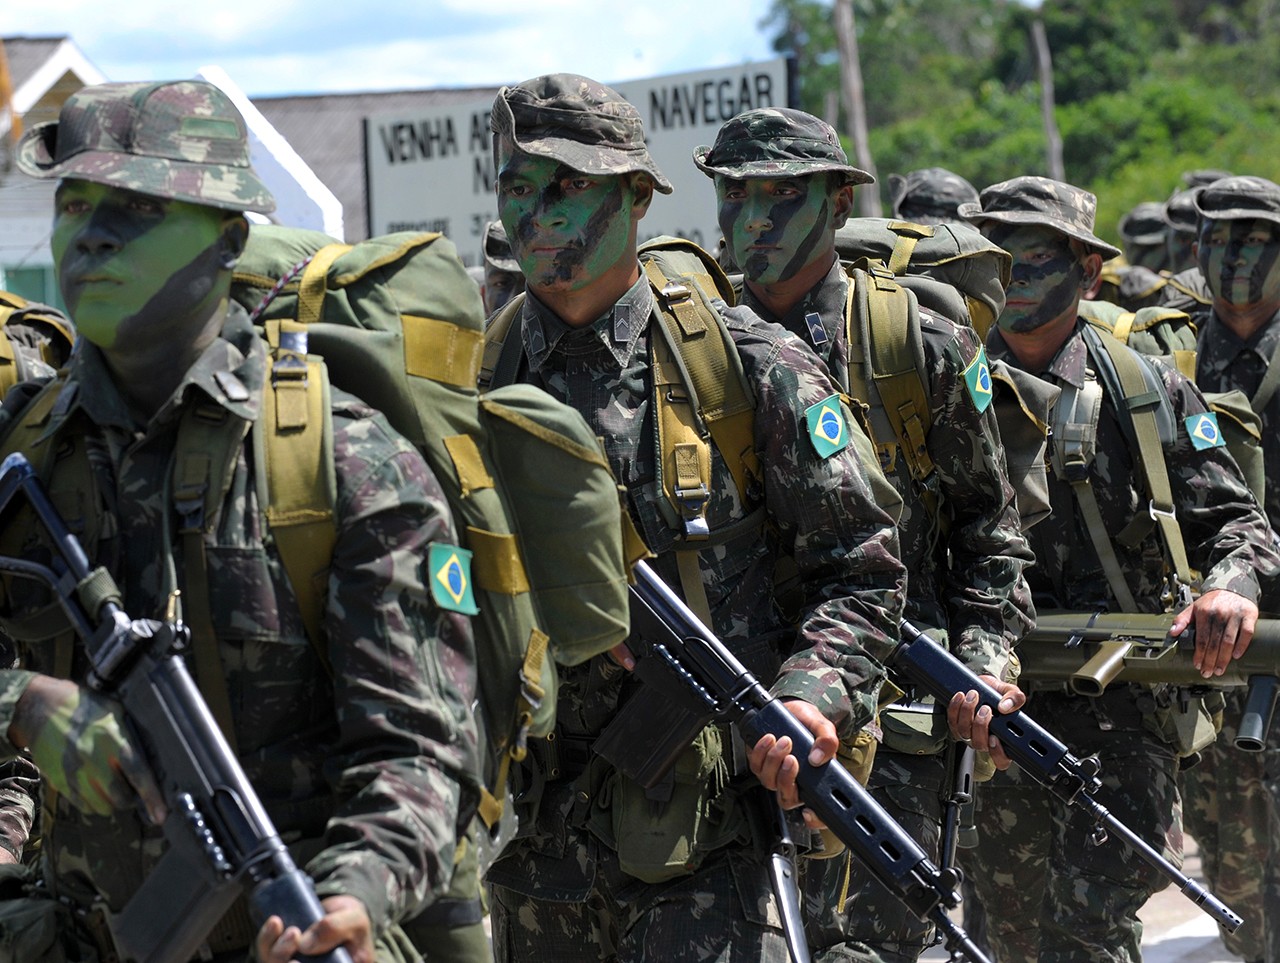 Pelotão de Fronteira do Exército Brasileiro